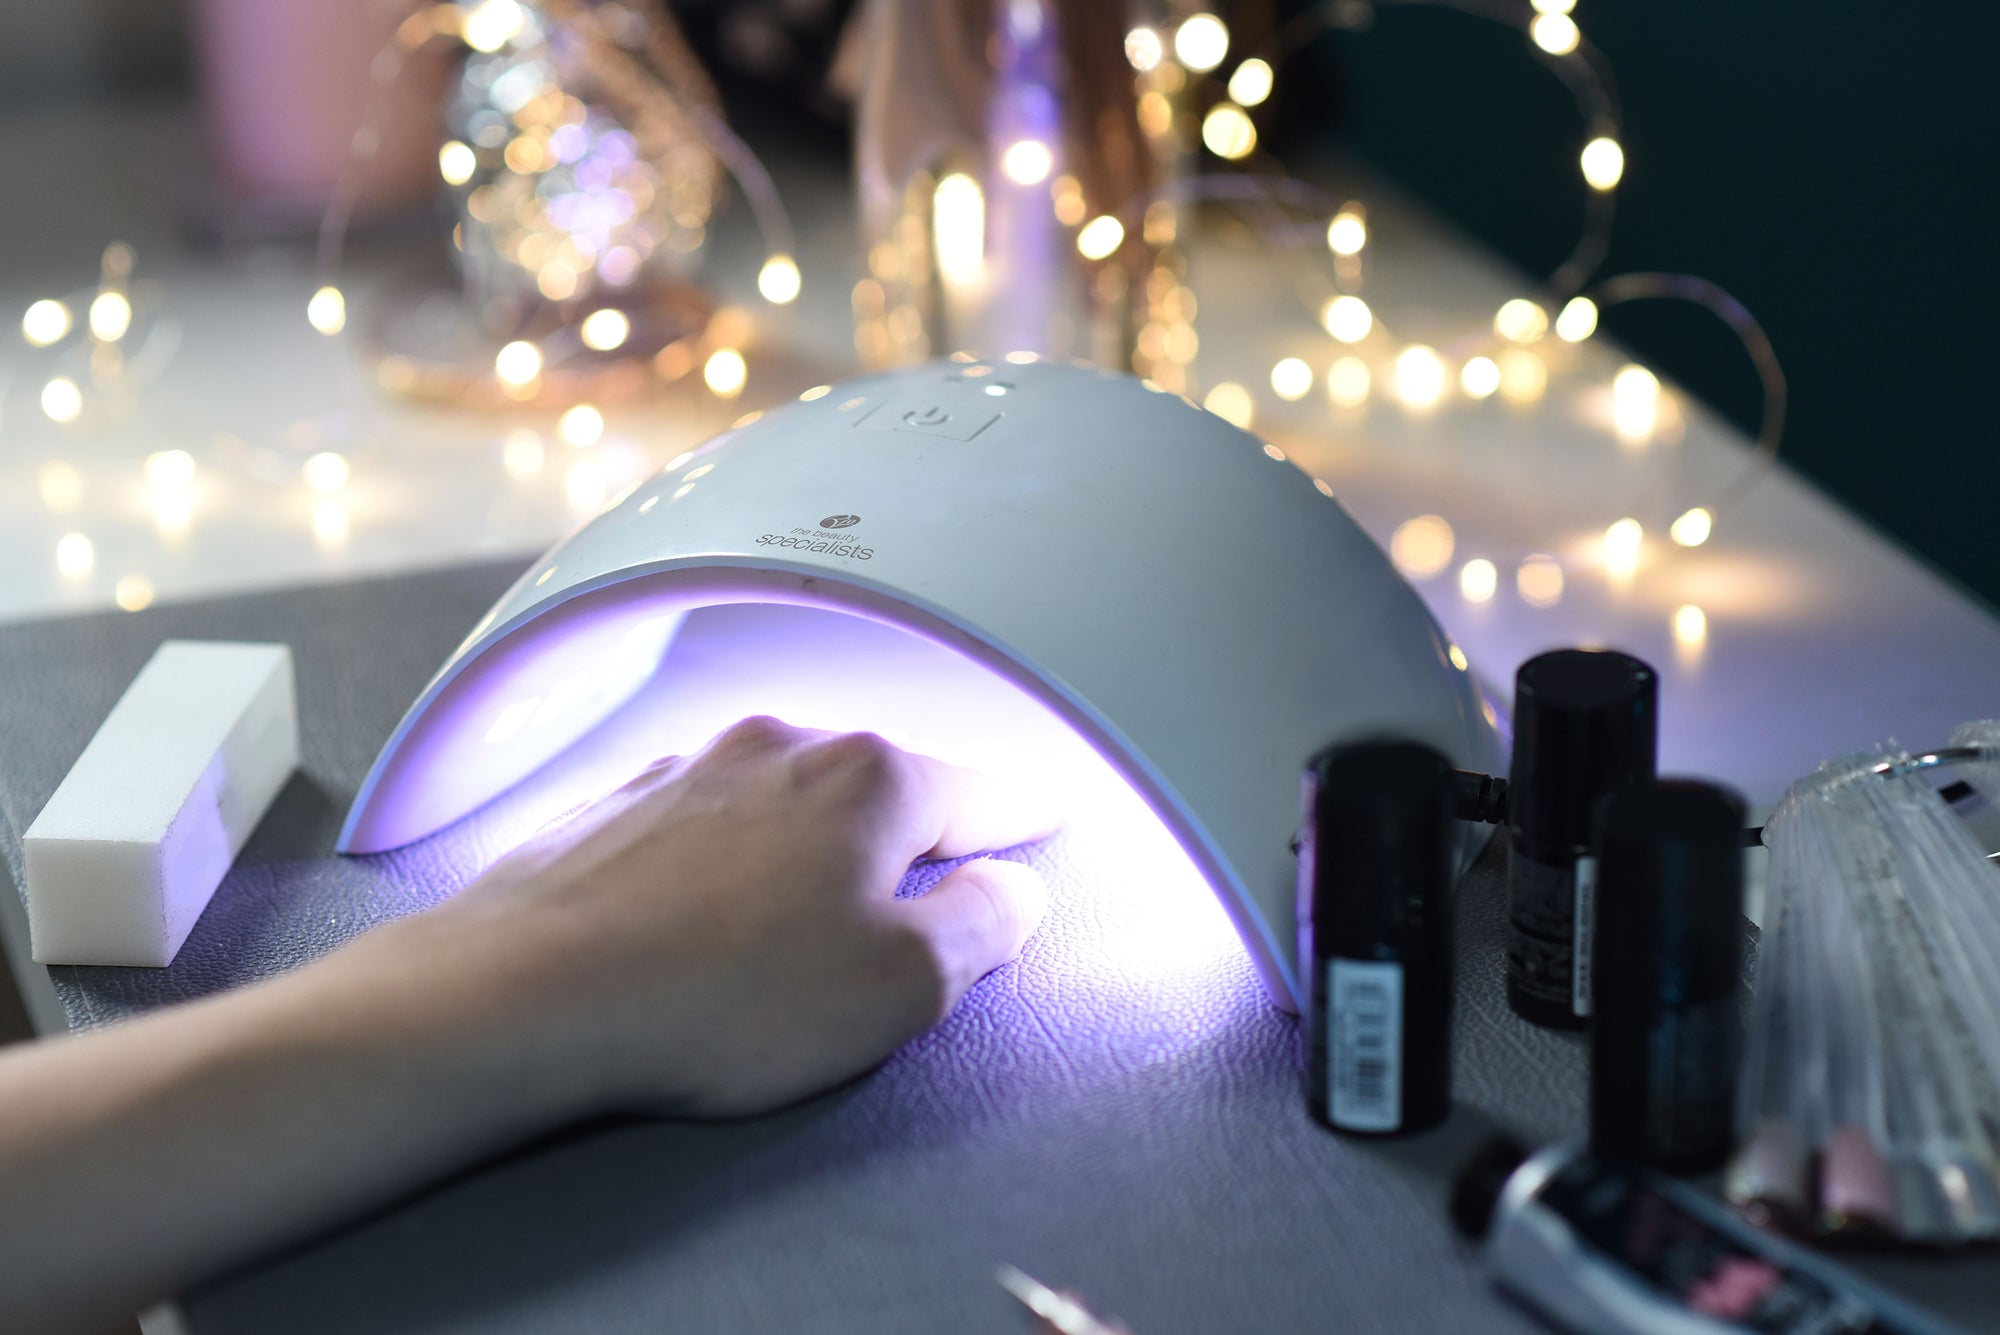 Some using a UV Nail Lamp to cure nail polish